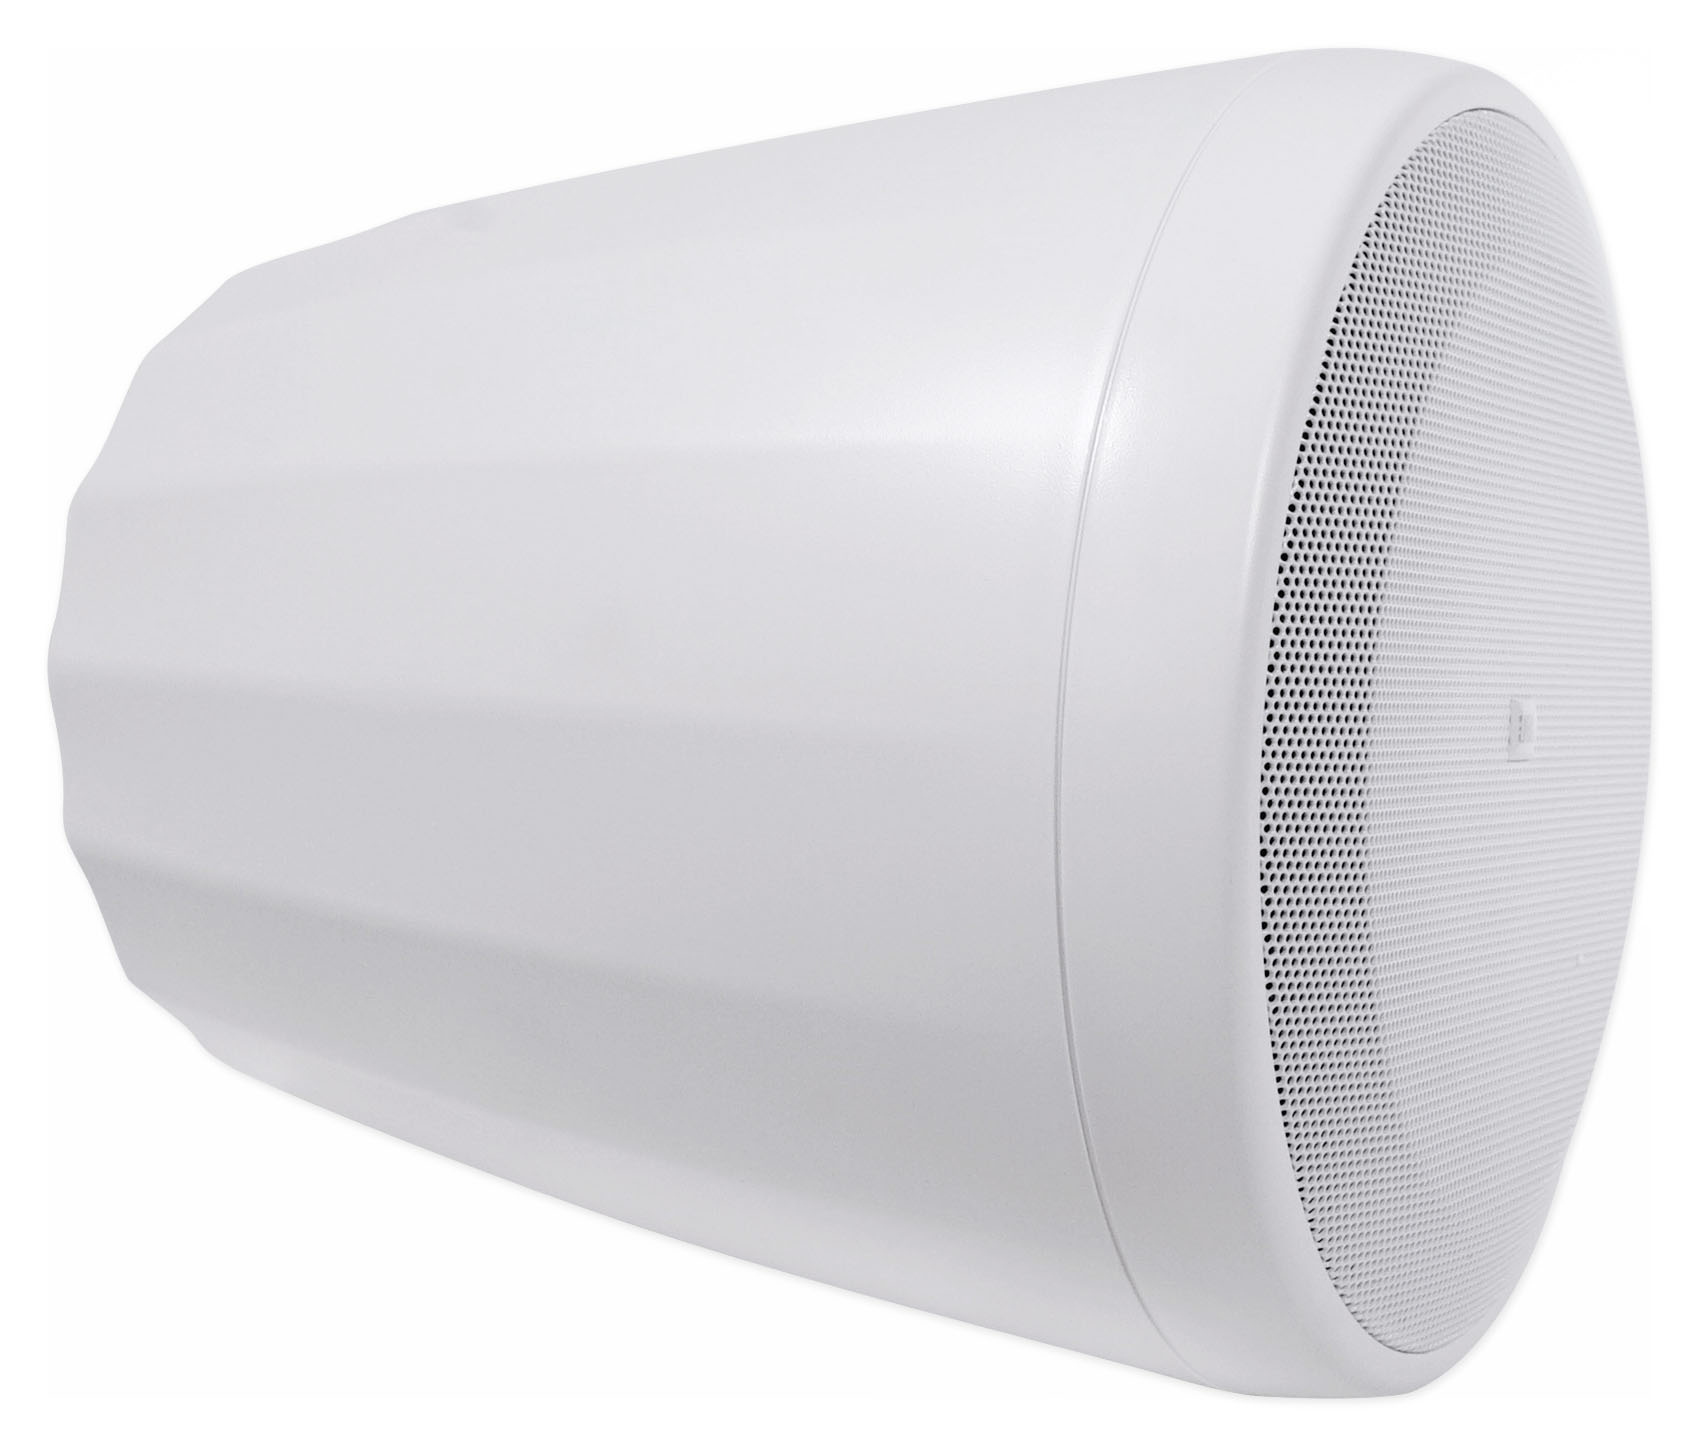 2) JBL Control 65P/T-WH White 5.25" 70v Commercial Pendant Speakers 4 Restaurant - image 2 of 7